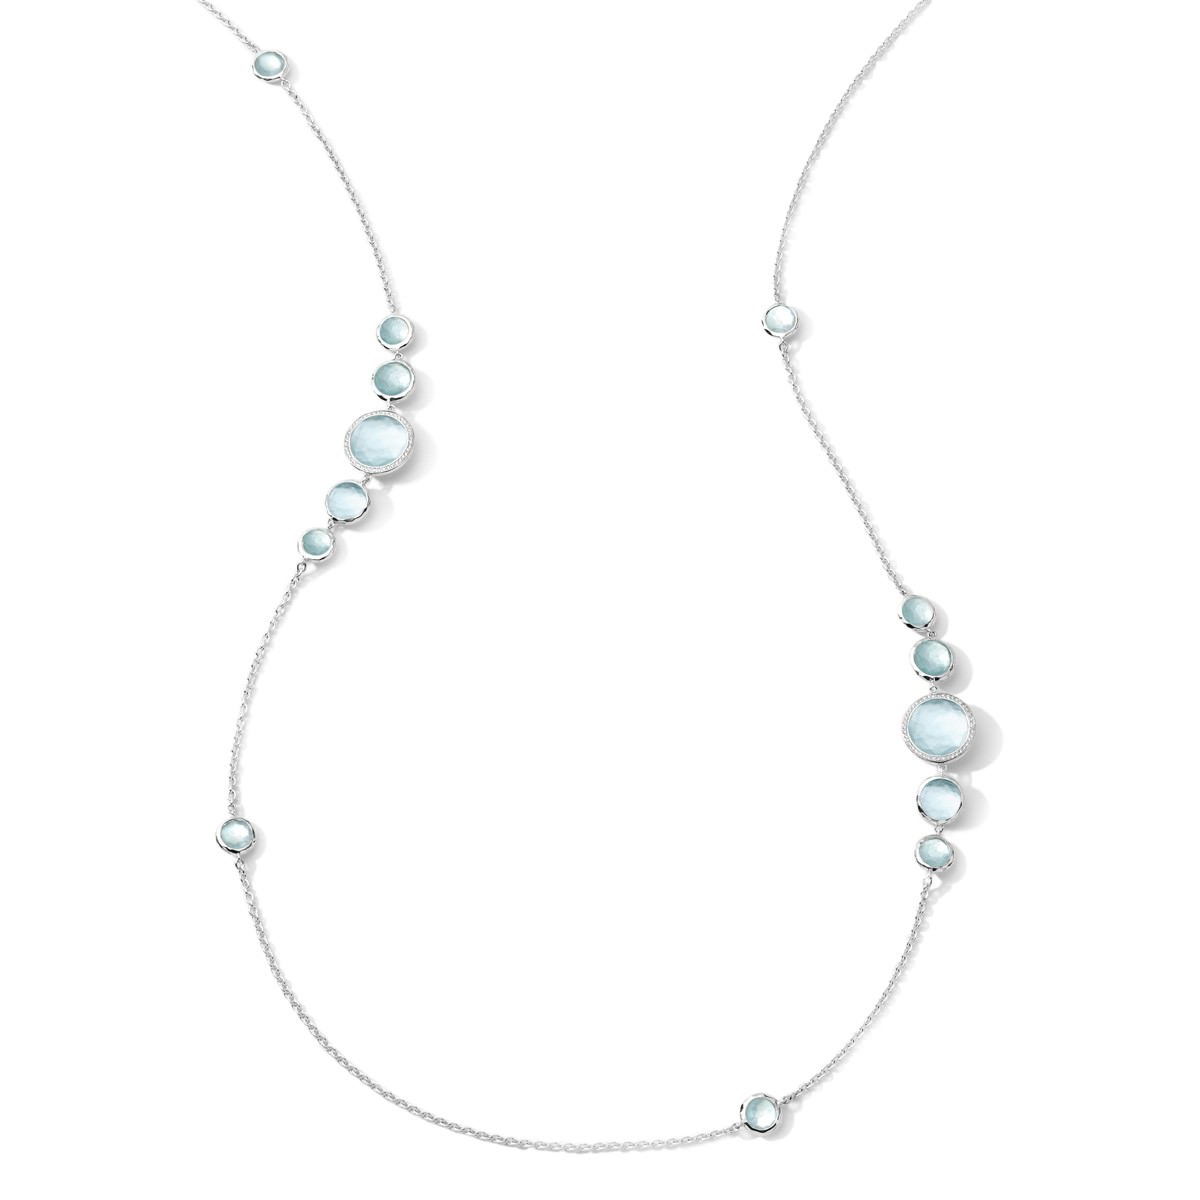 elegant minimal necklace design